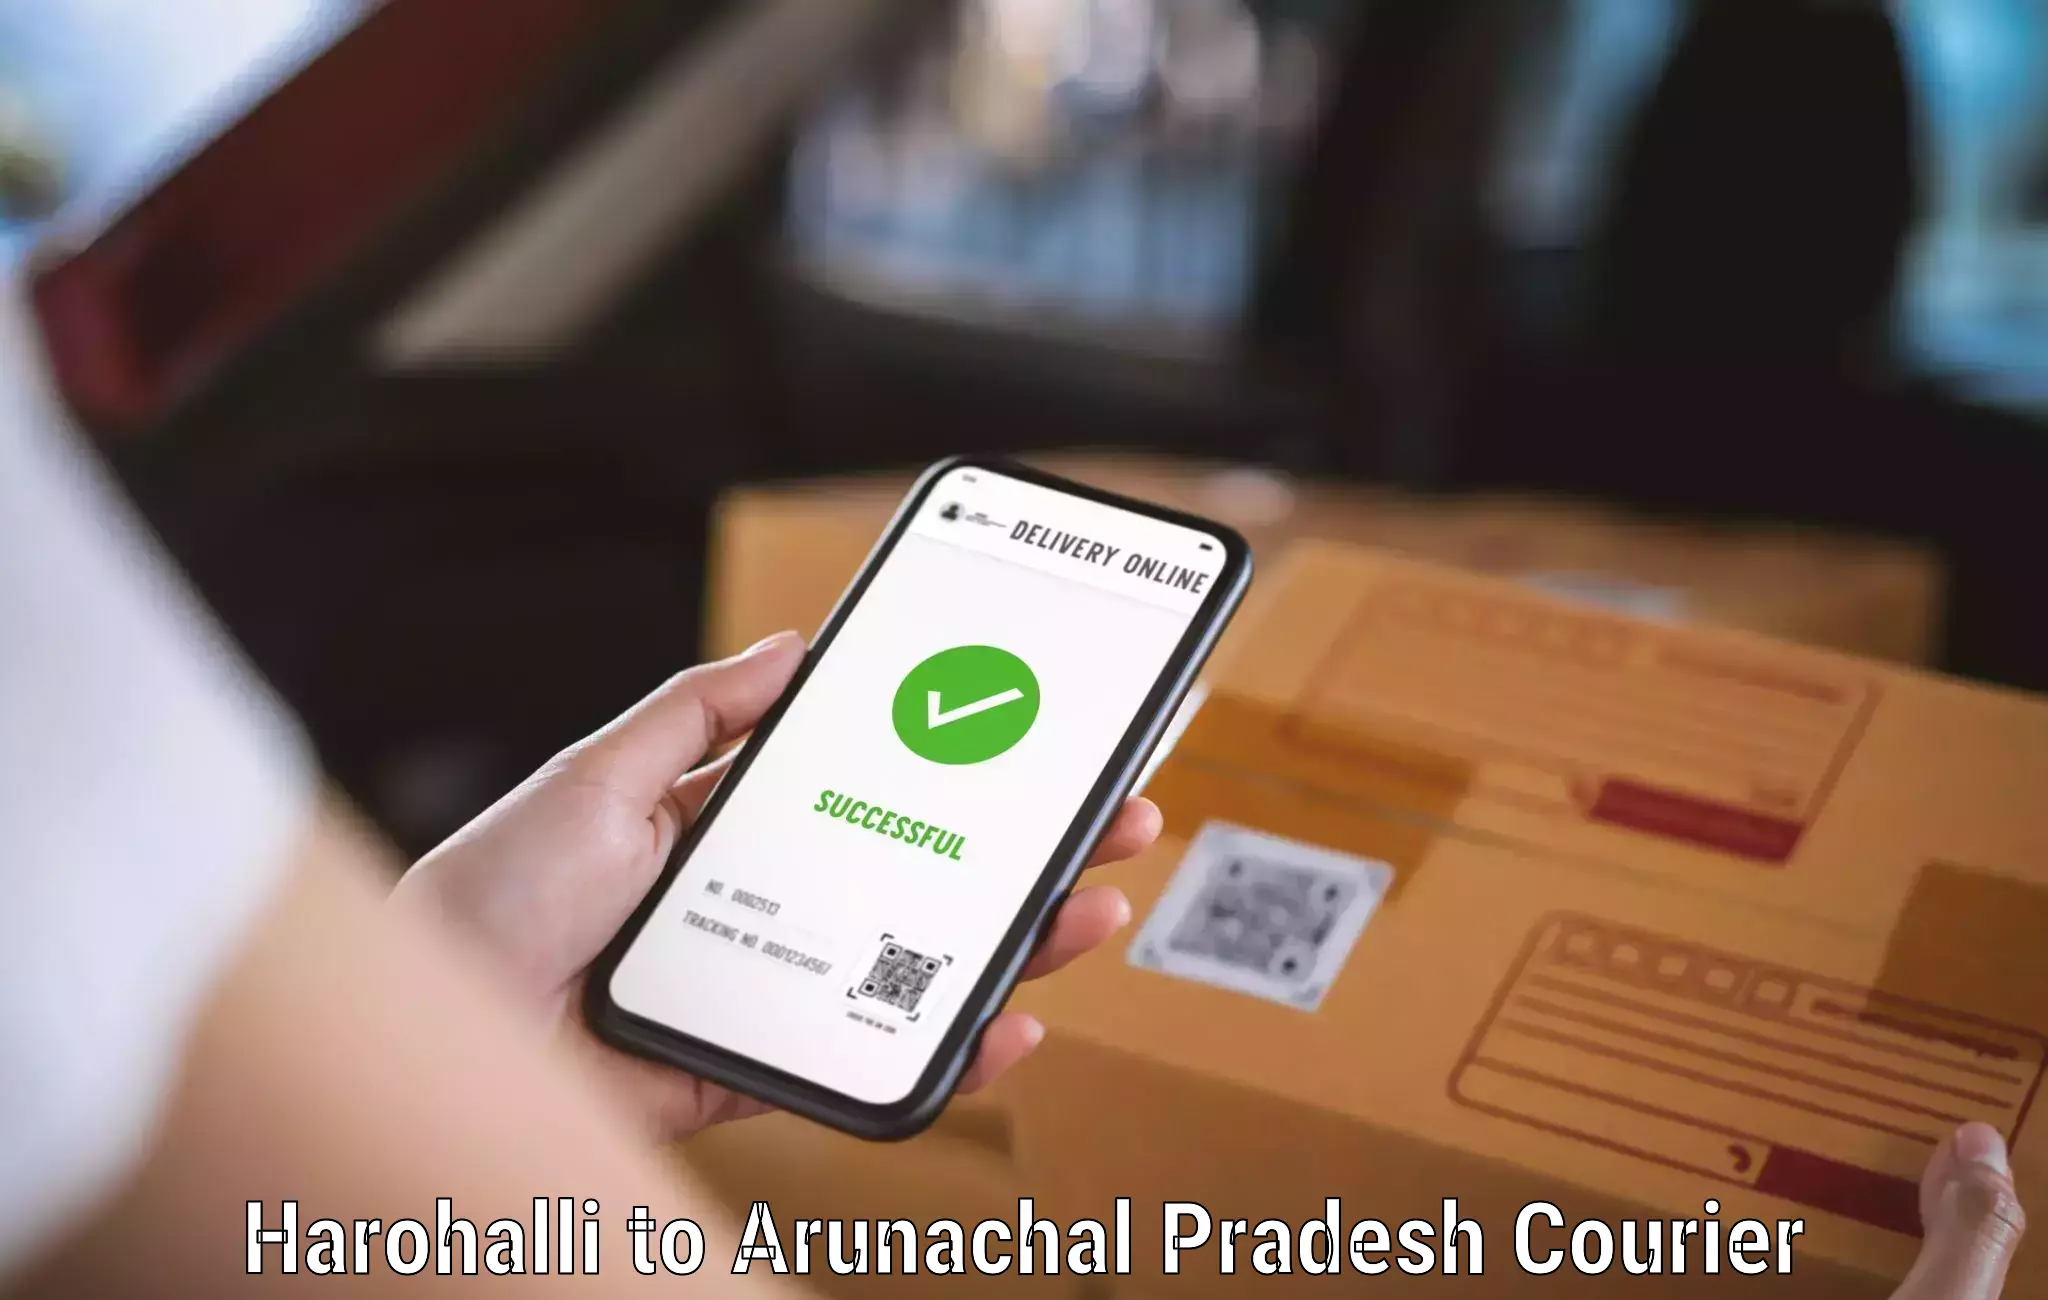 Courier service booking Harohalli to Arunachal Pradesh